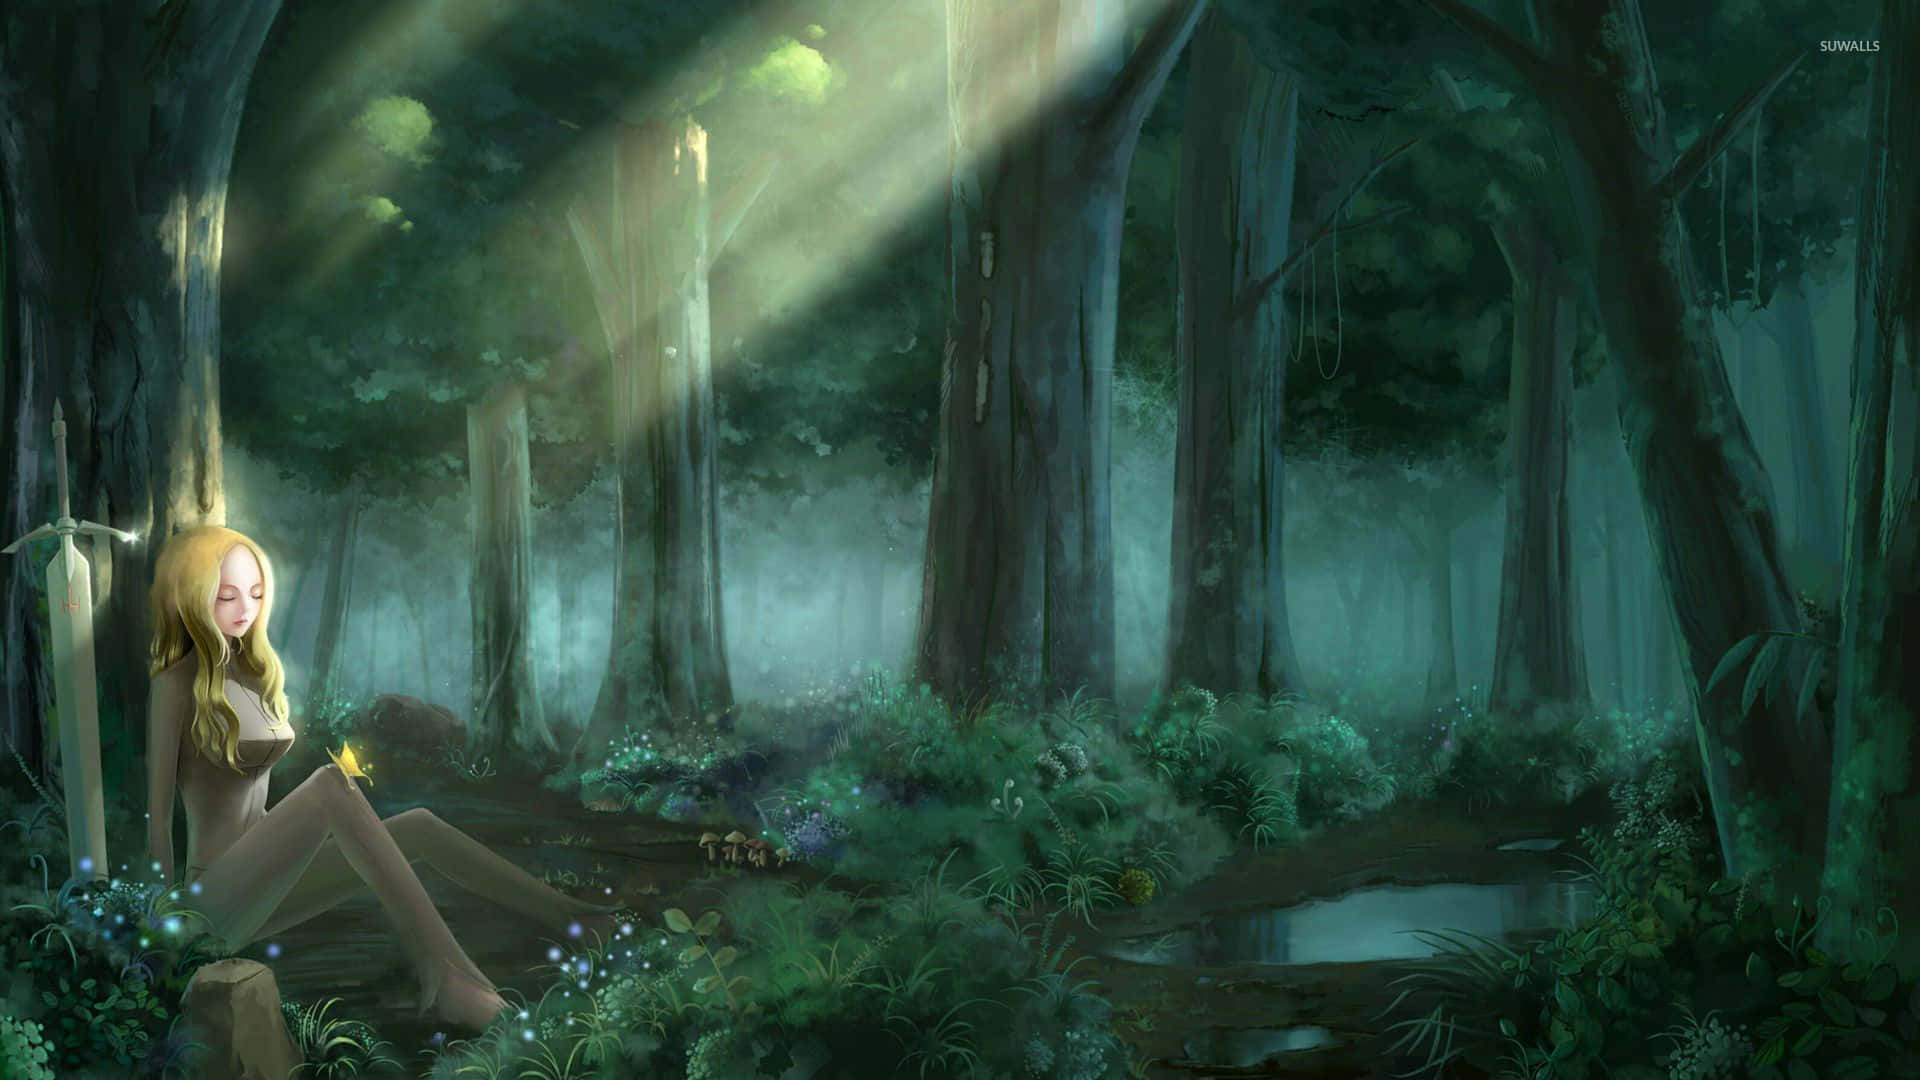 Njutav Den Magiska Atmosfären I Naturen I Denna Anime-skog. Wallpaper